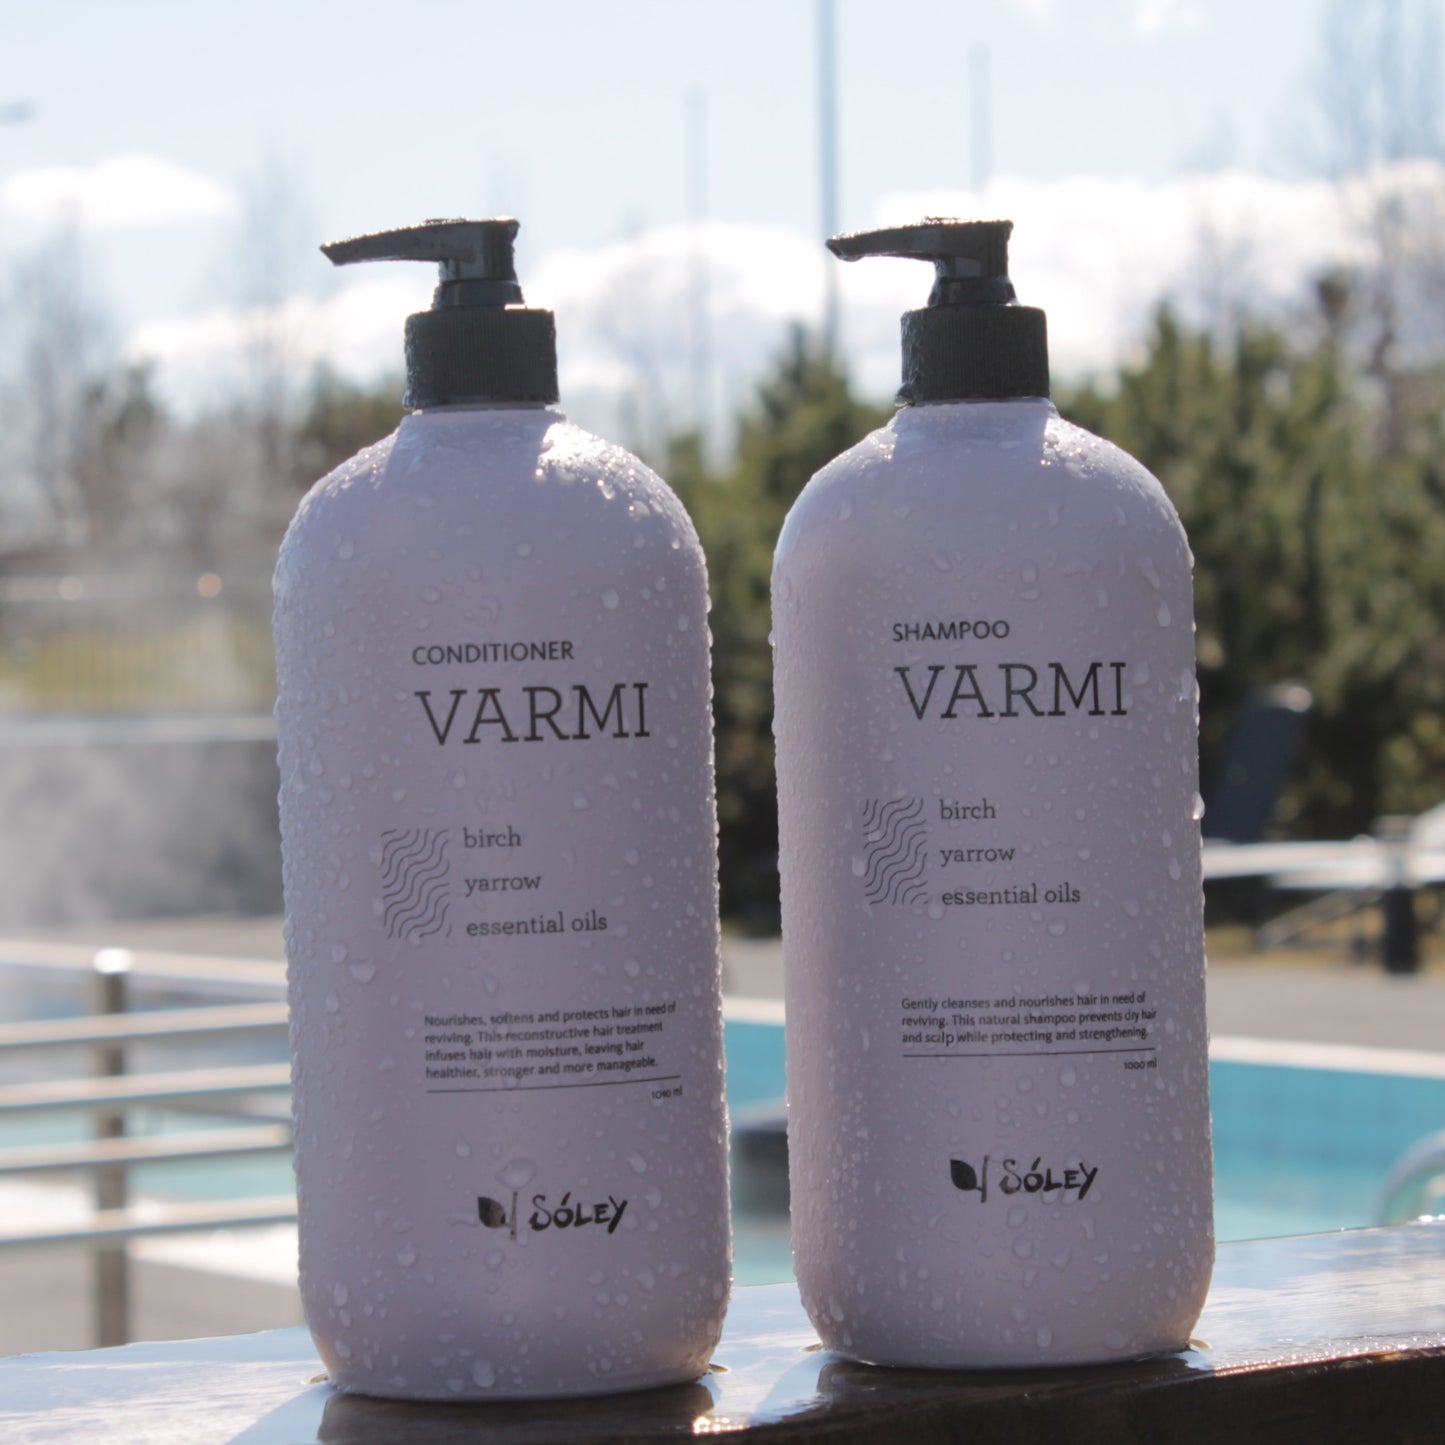 Varmi Shampoo and Conditioner in outdoor SPA